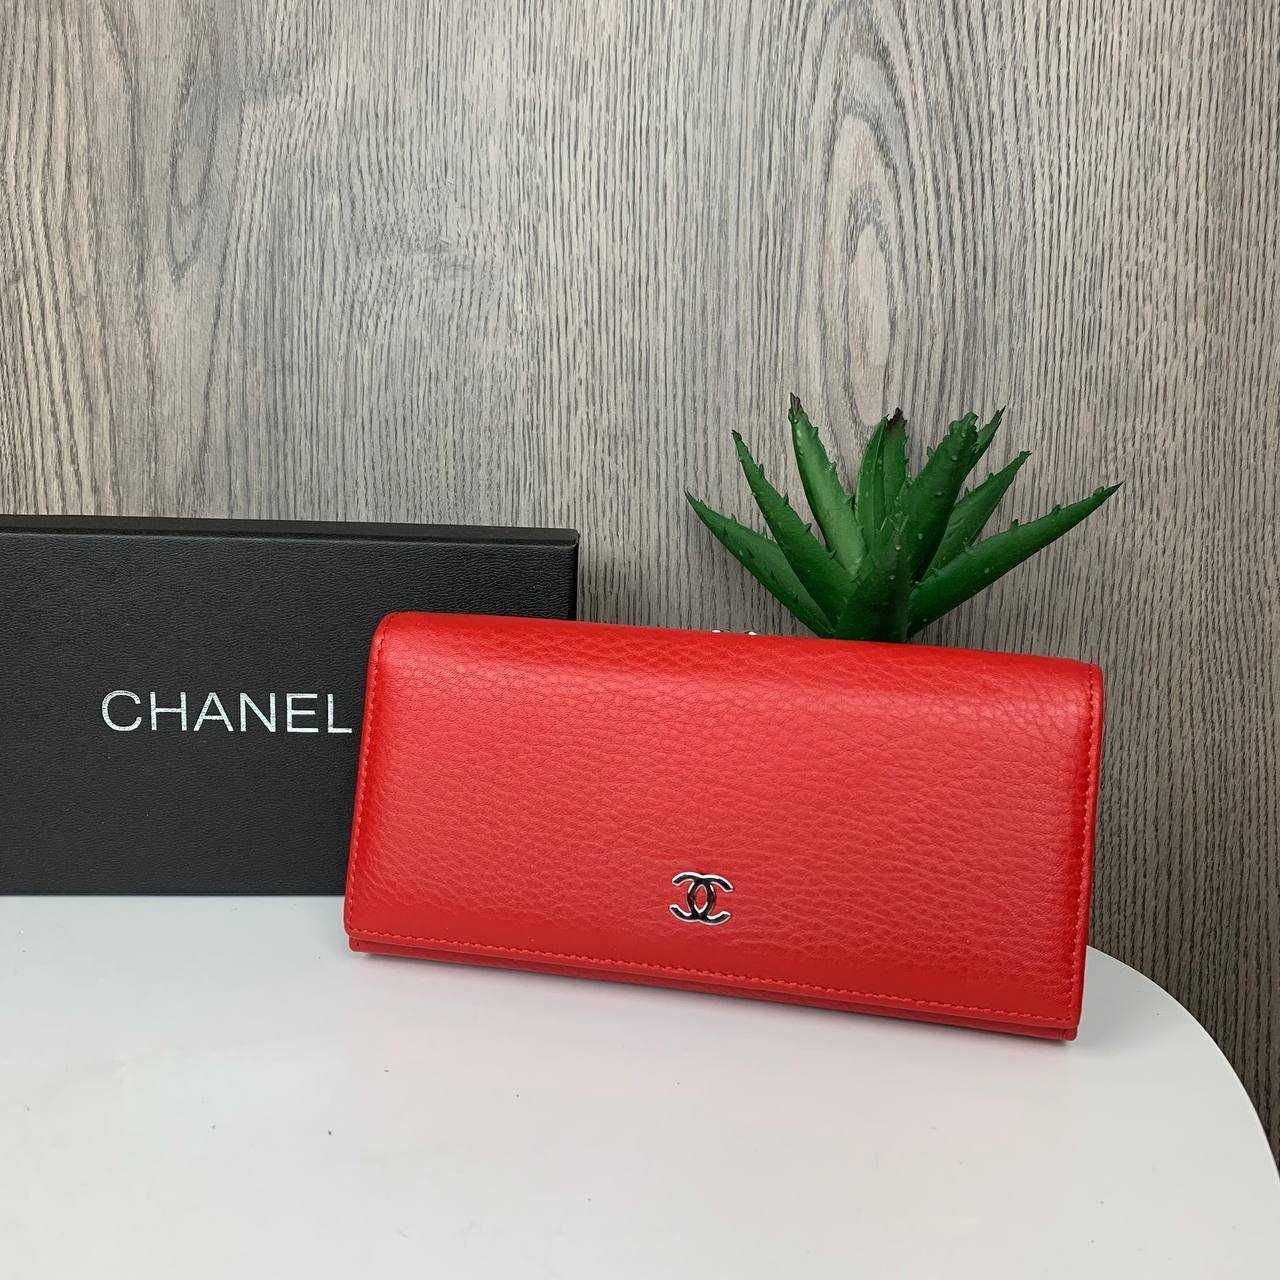 Женский кожаный кошелек в подарочной коробке фирменной шанель Chanel